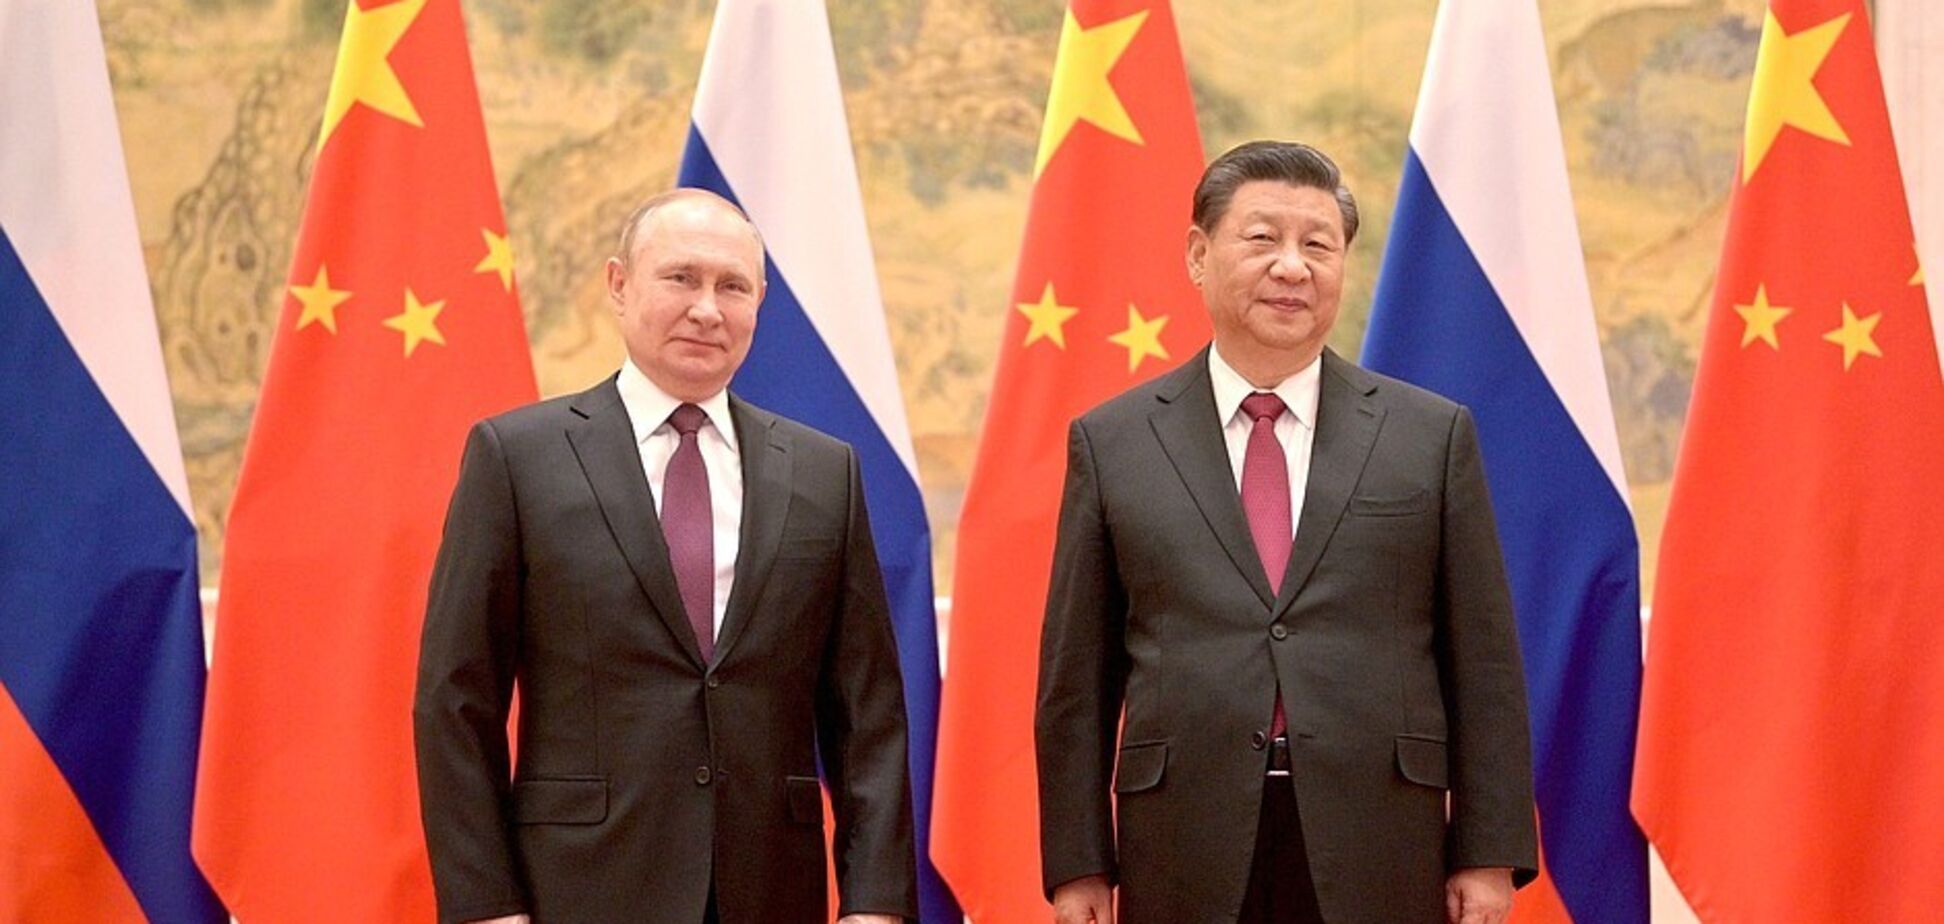 Китай перестал принимать транзакции из РФ